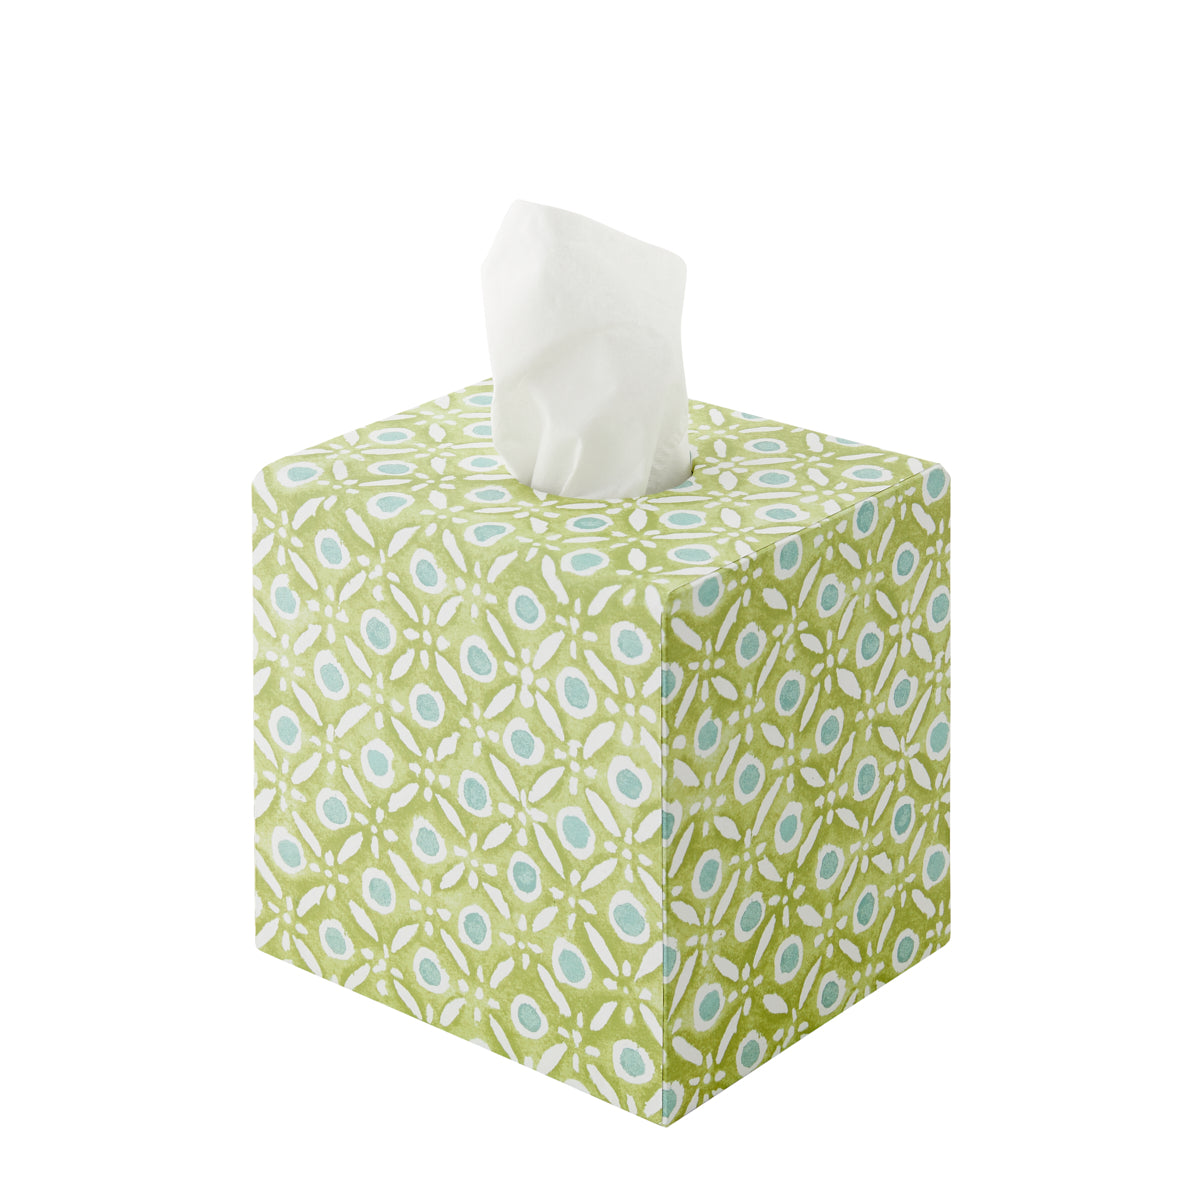 Tissue Box Batik Dots - Green/Aqua